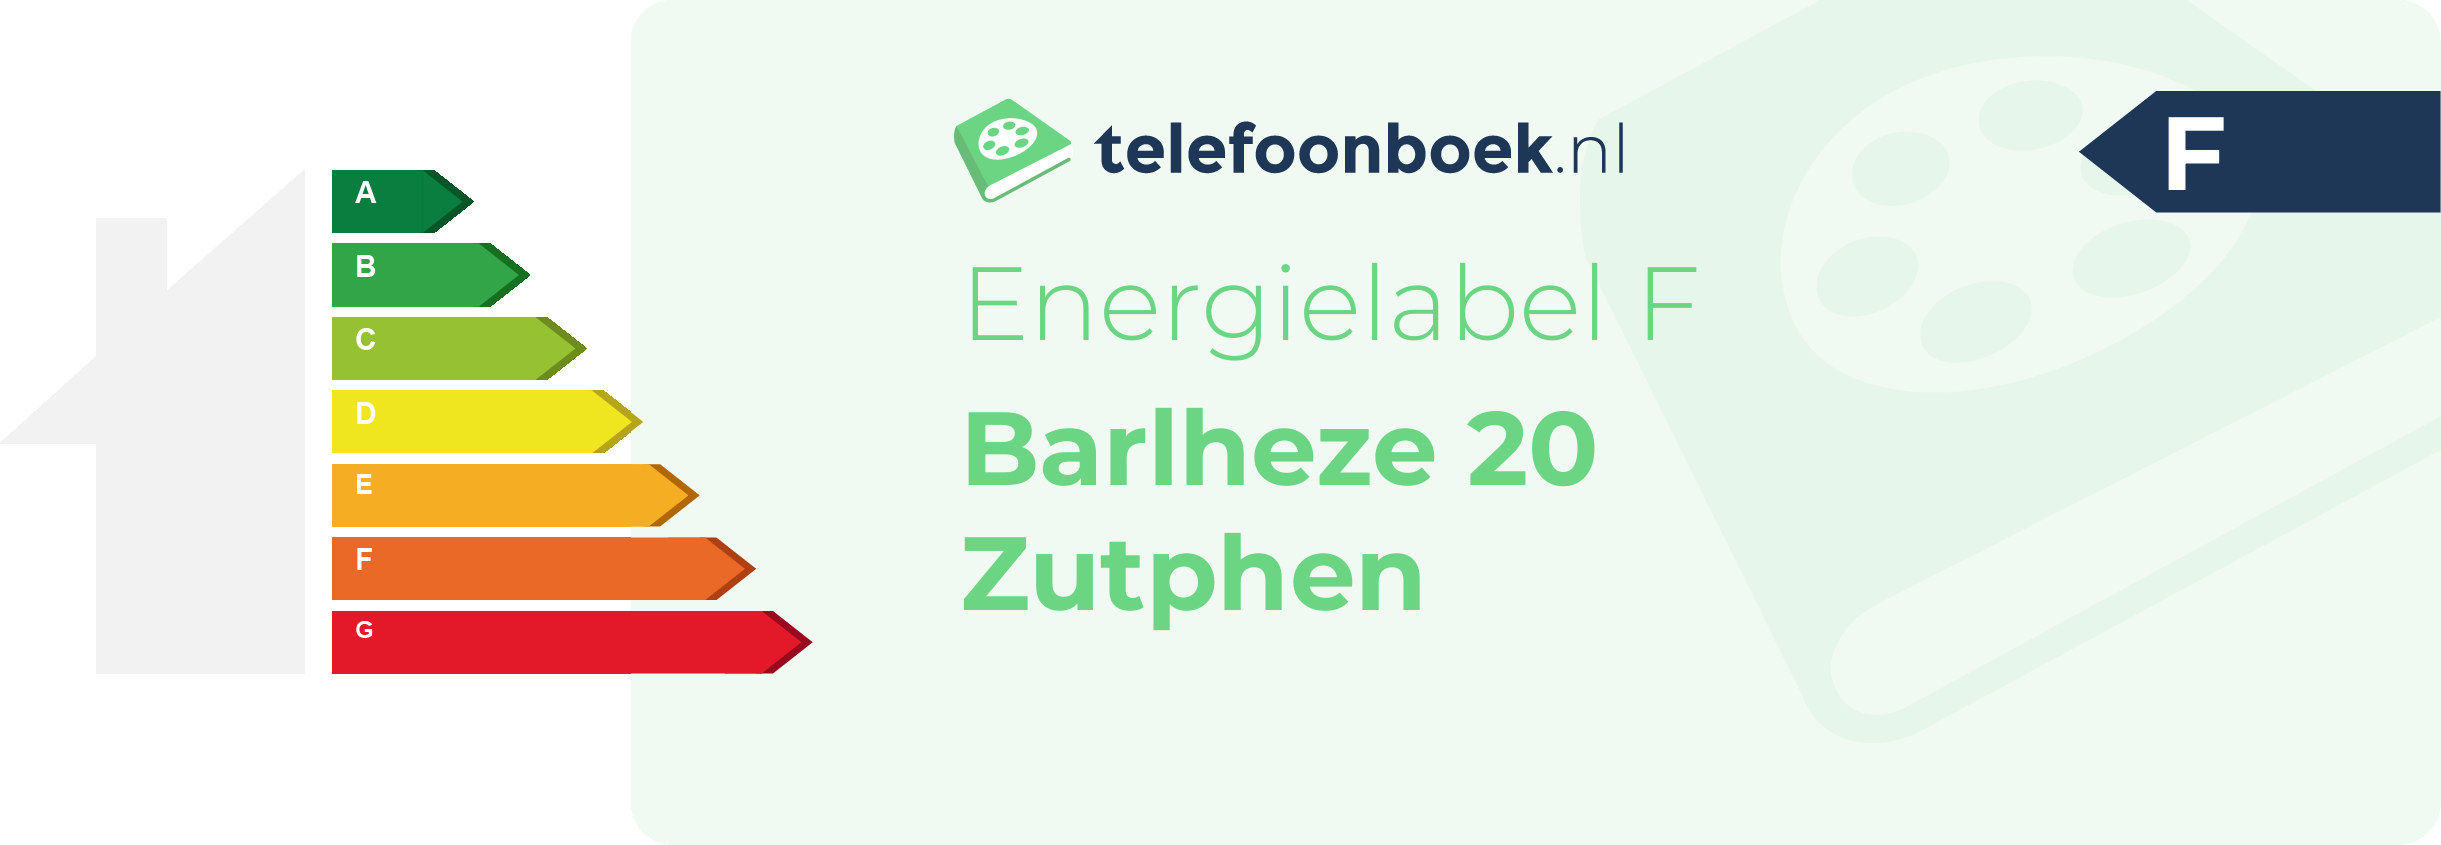 Energielabel Barlheze 20 Zutphen